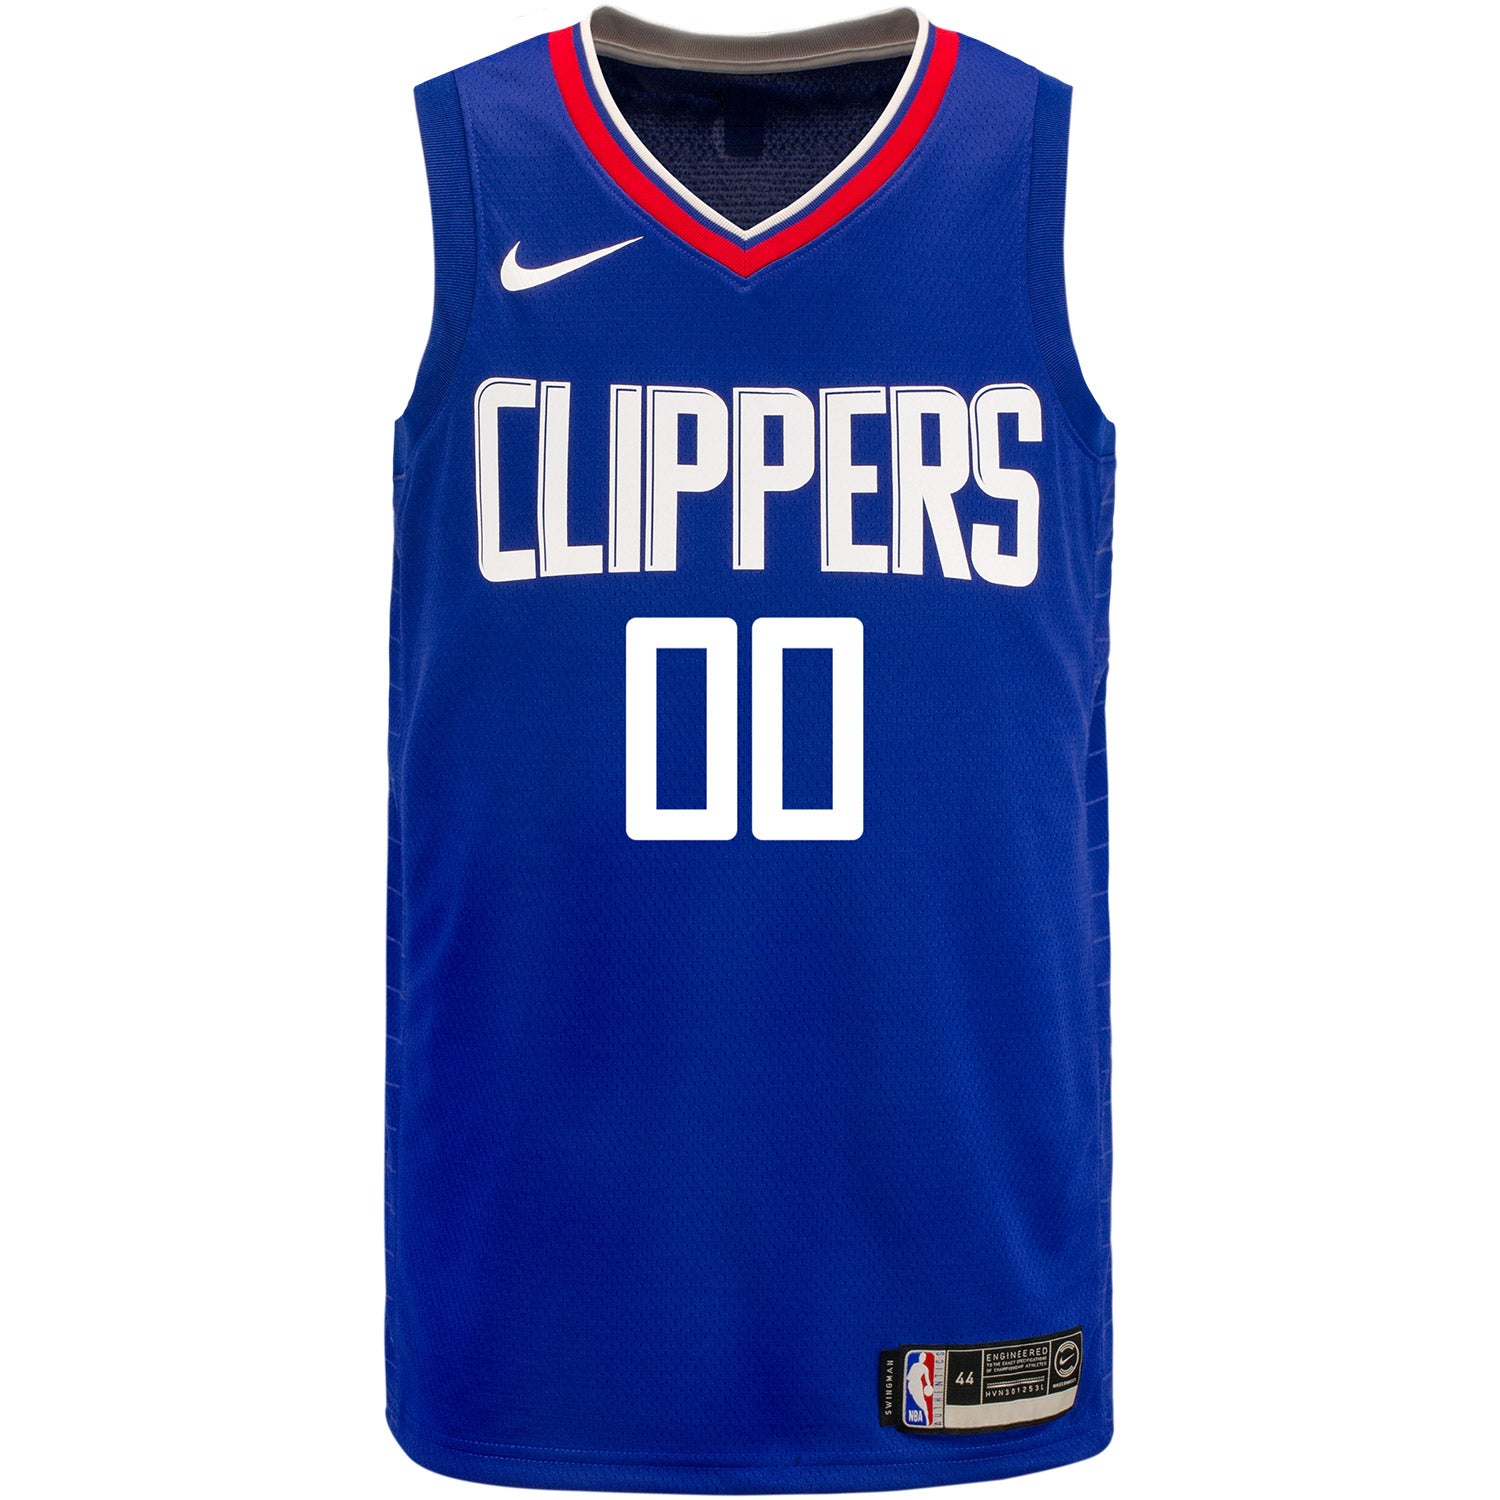 La Clippers Personalized Nike Association Edition Swingman Jersey